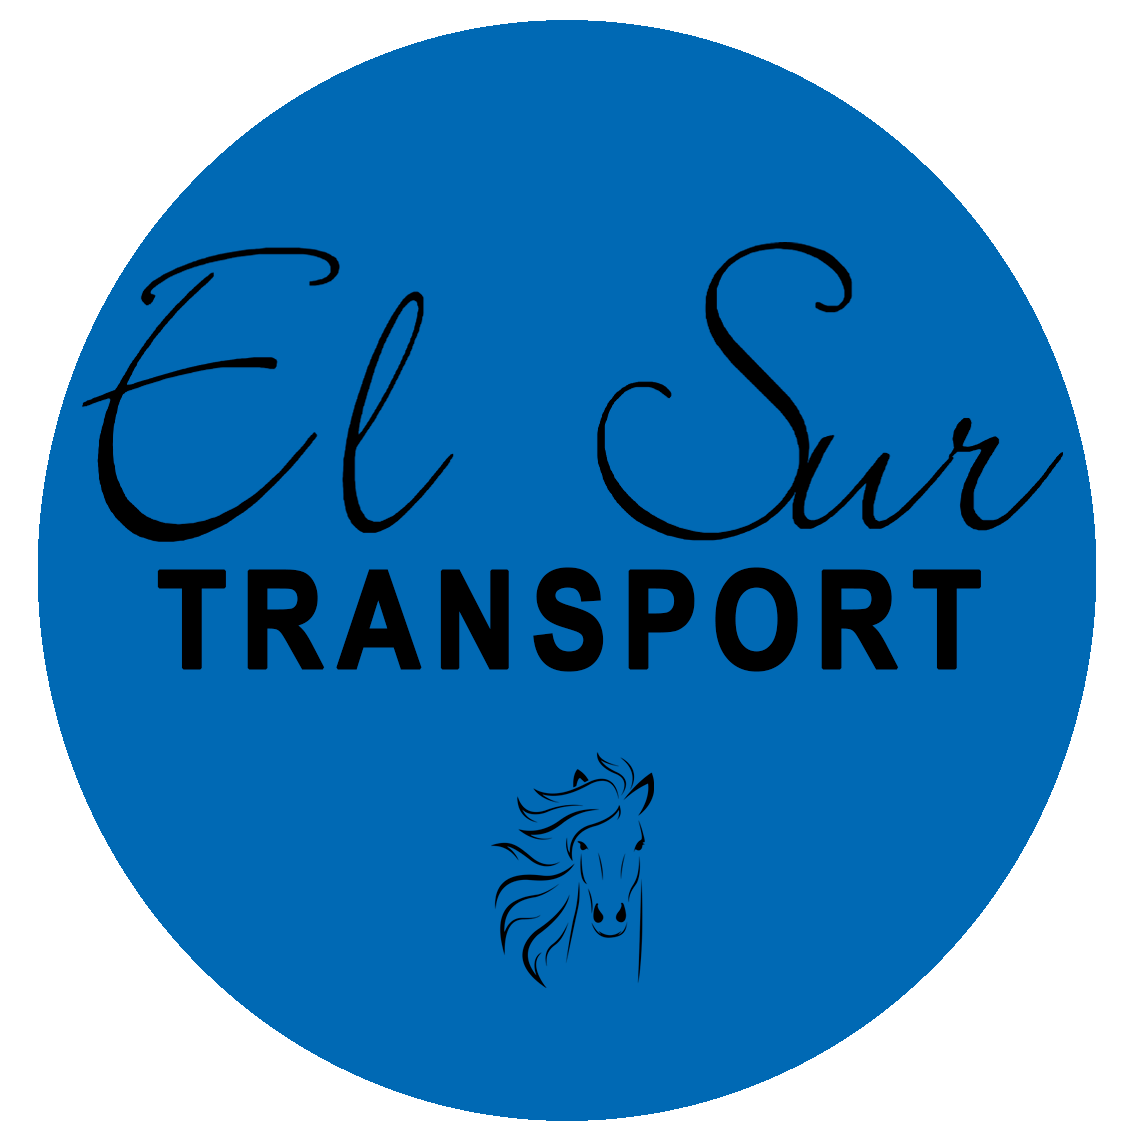 ElSur Transport